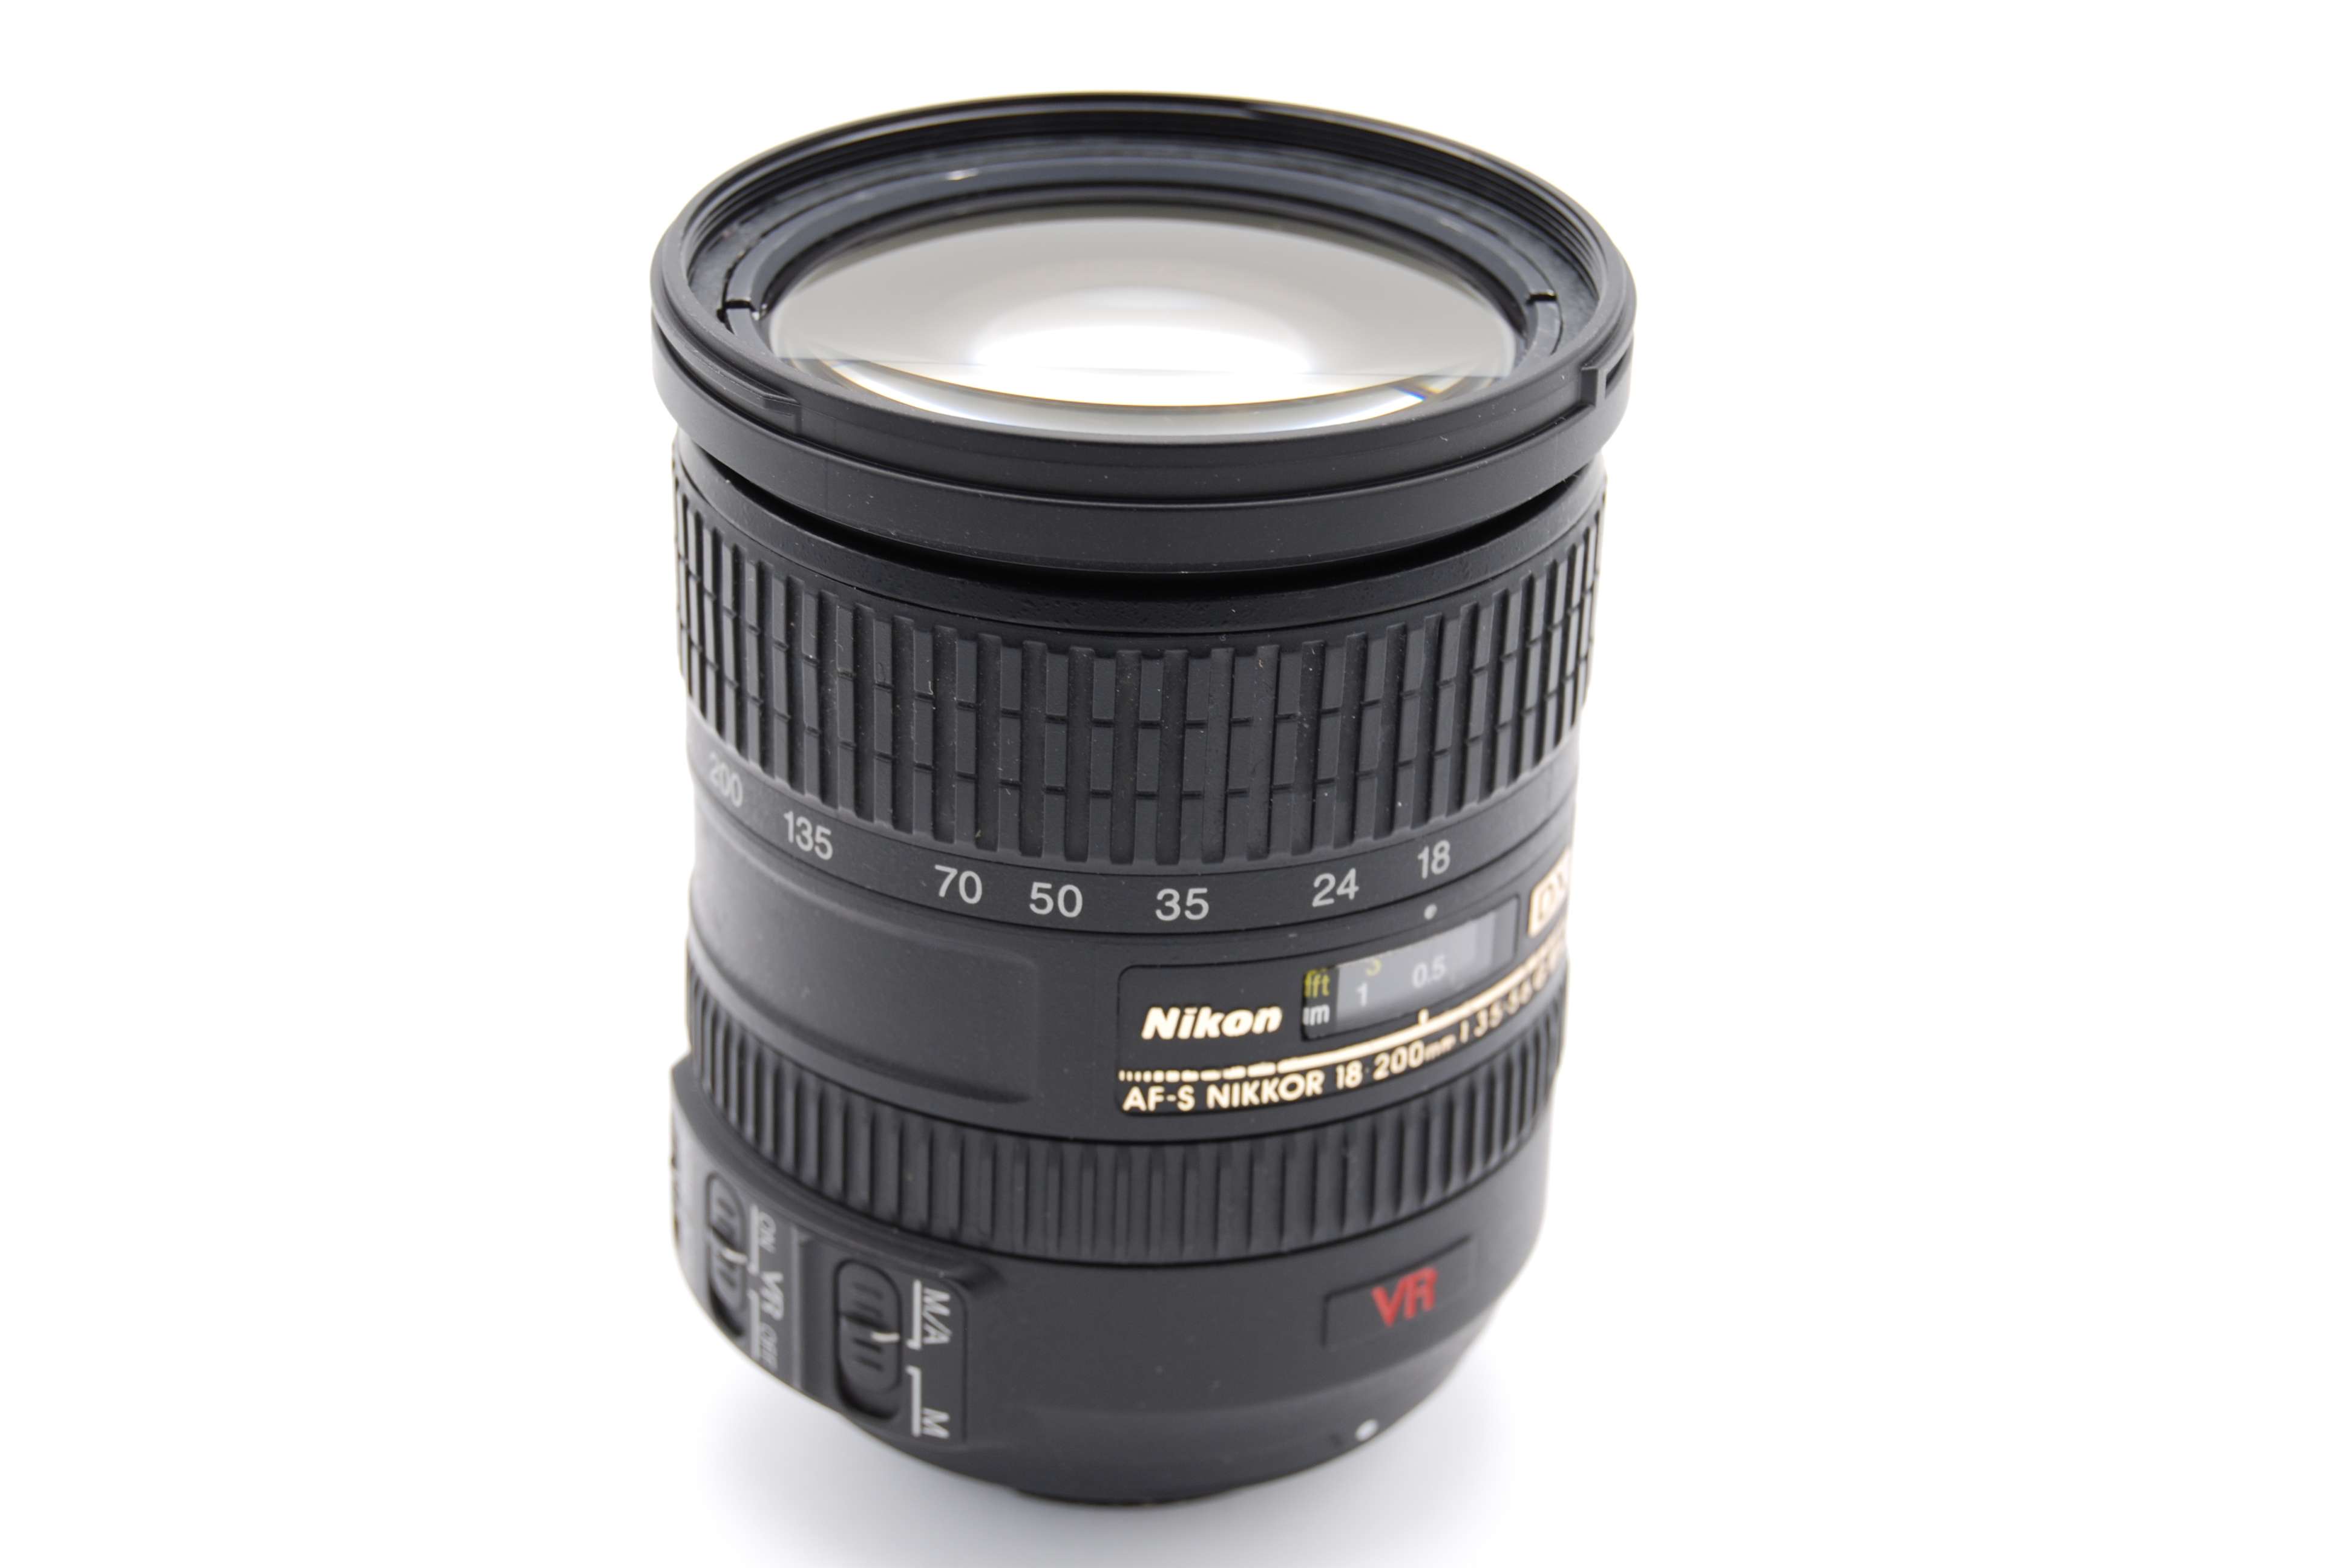 Nikon AF-S DX Nikkor 18-200mm f/3.5-5.6G IF-ED VR Zoom Lens | eBay